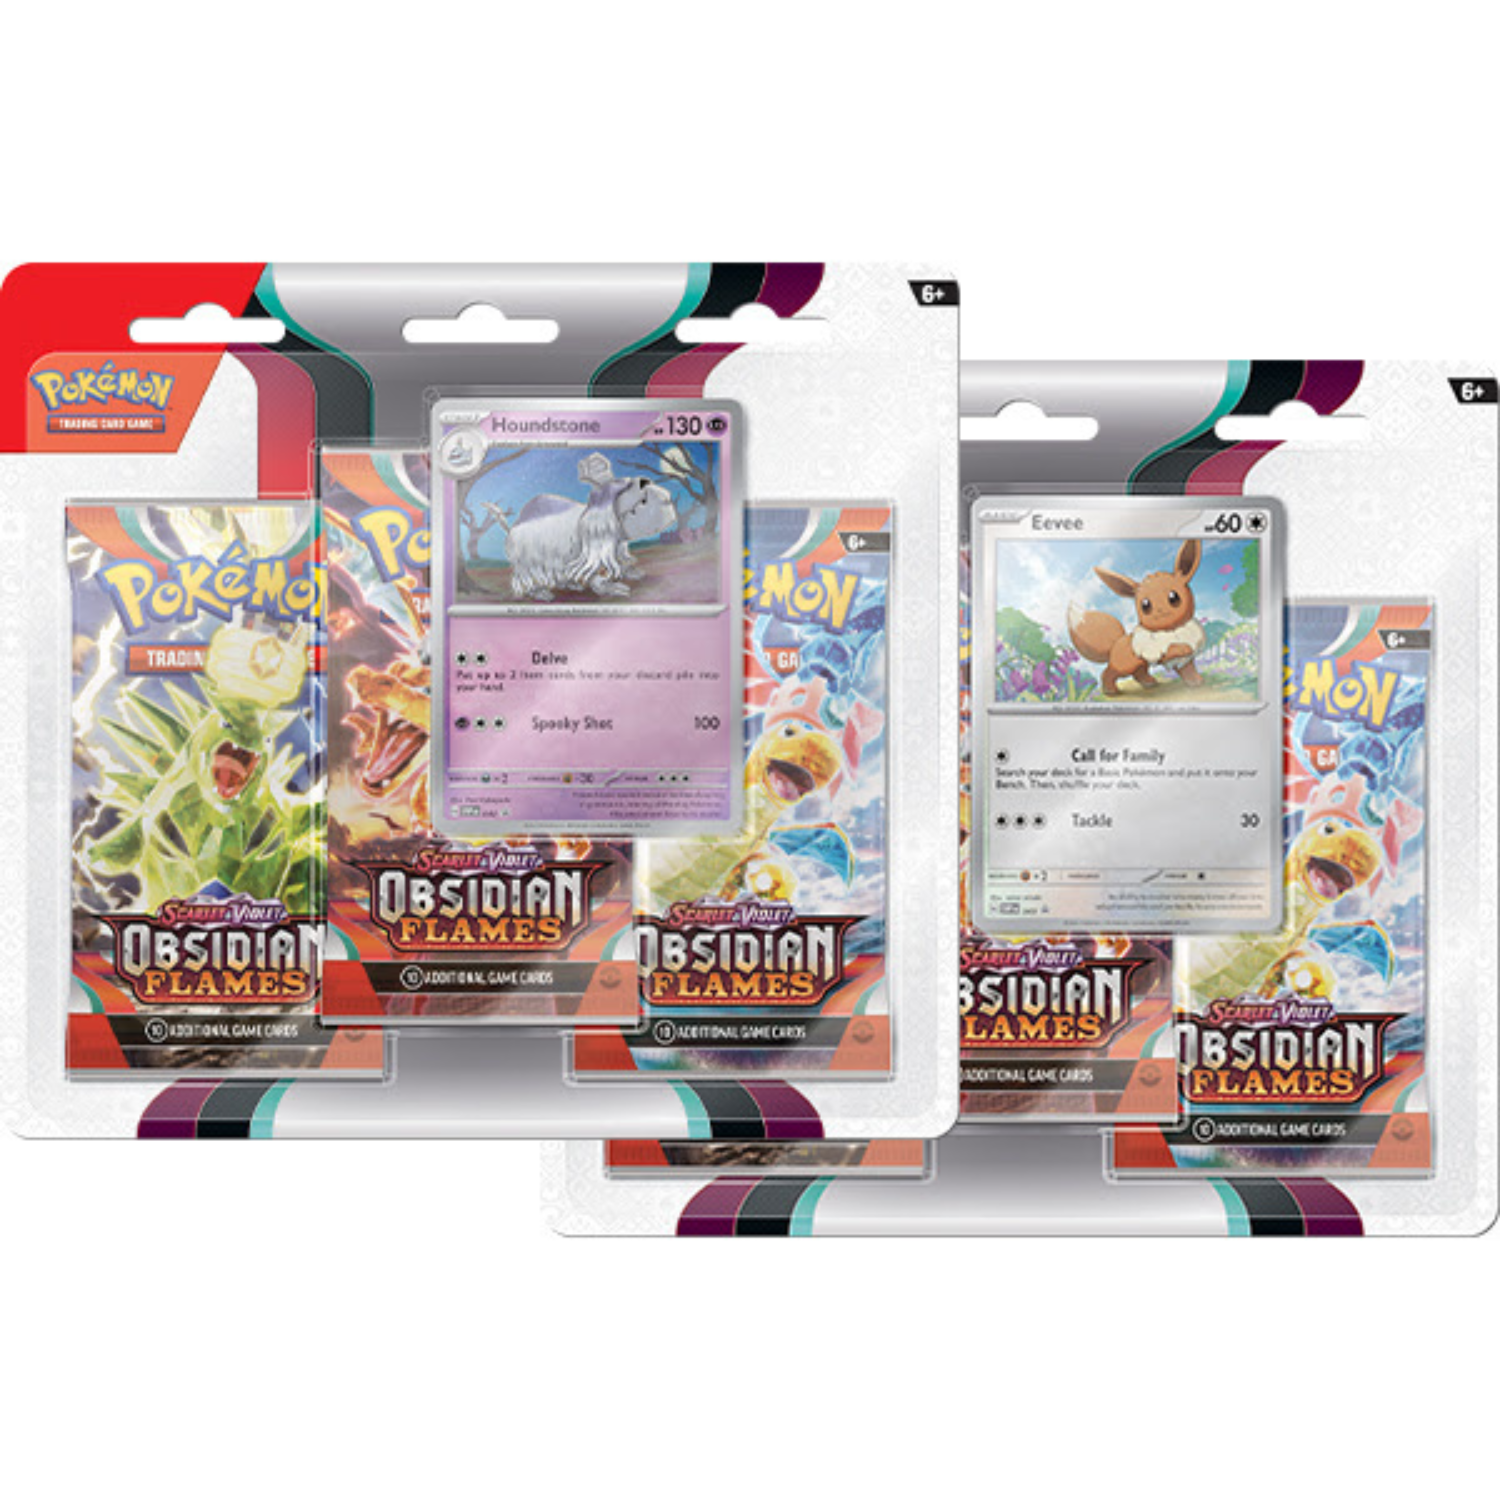 Pokémon TCG: BOTH Obsidian Flames 3-Packs